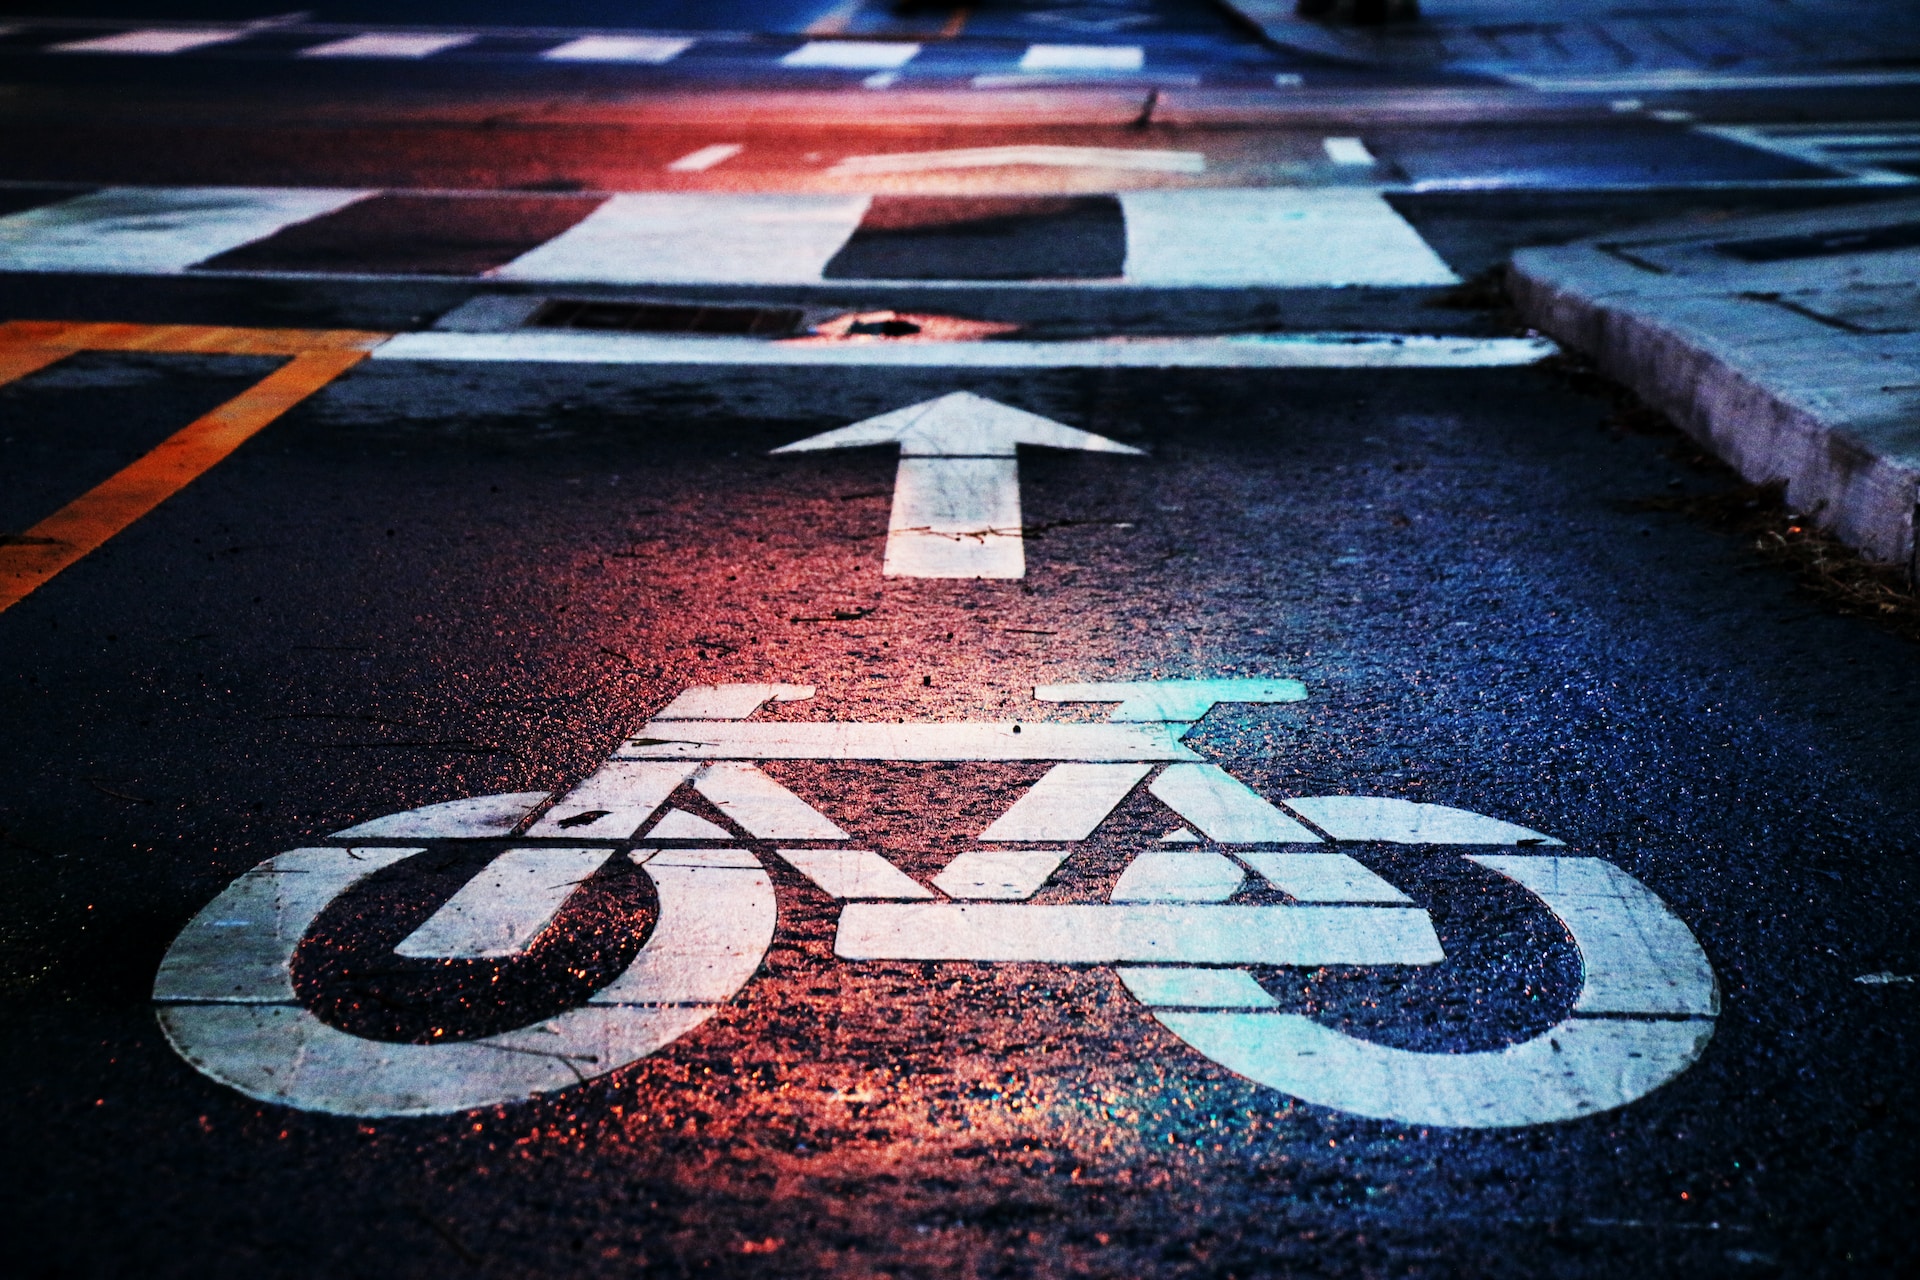 A bike lane